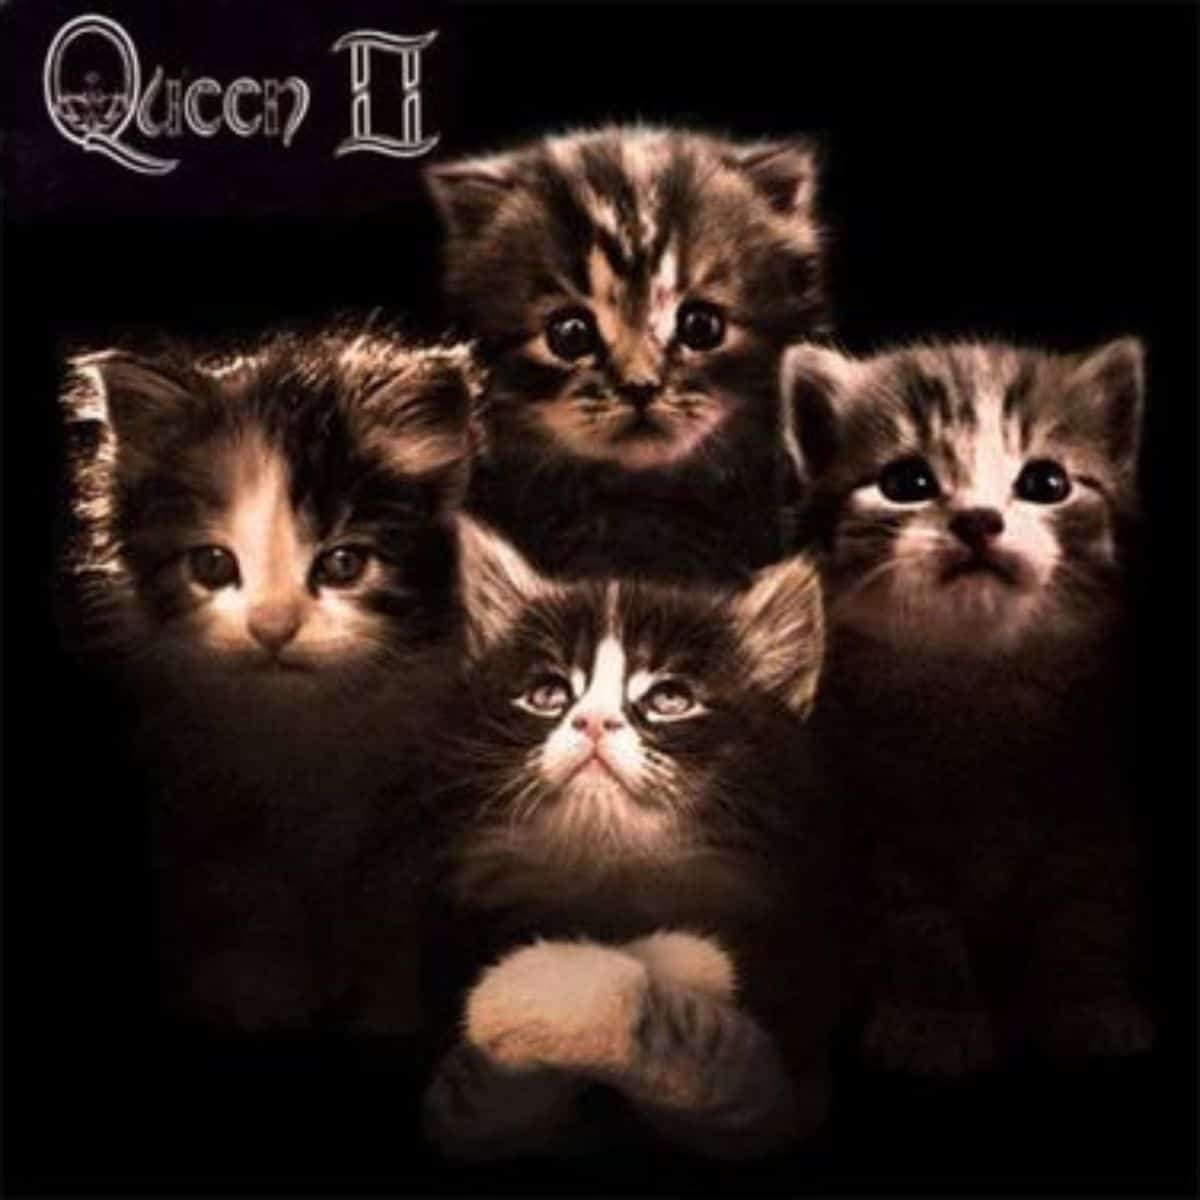 cat version of queen II album